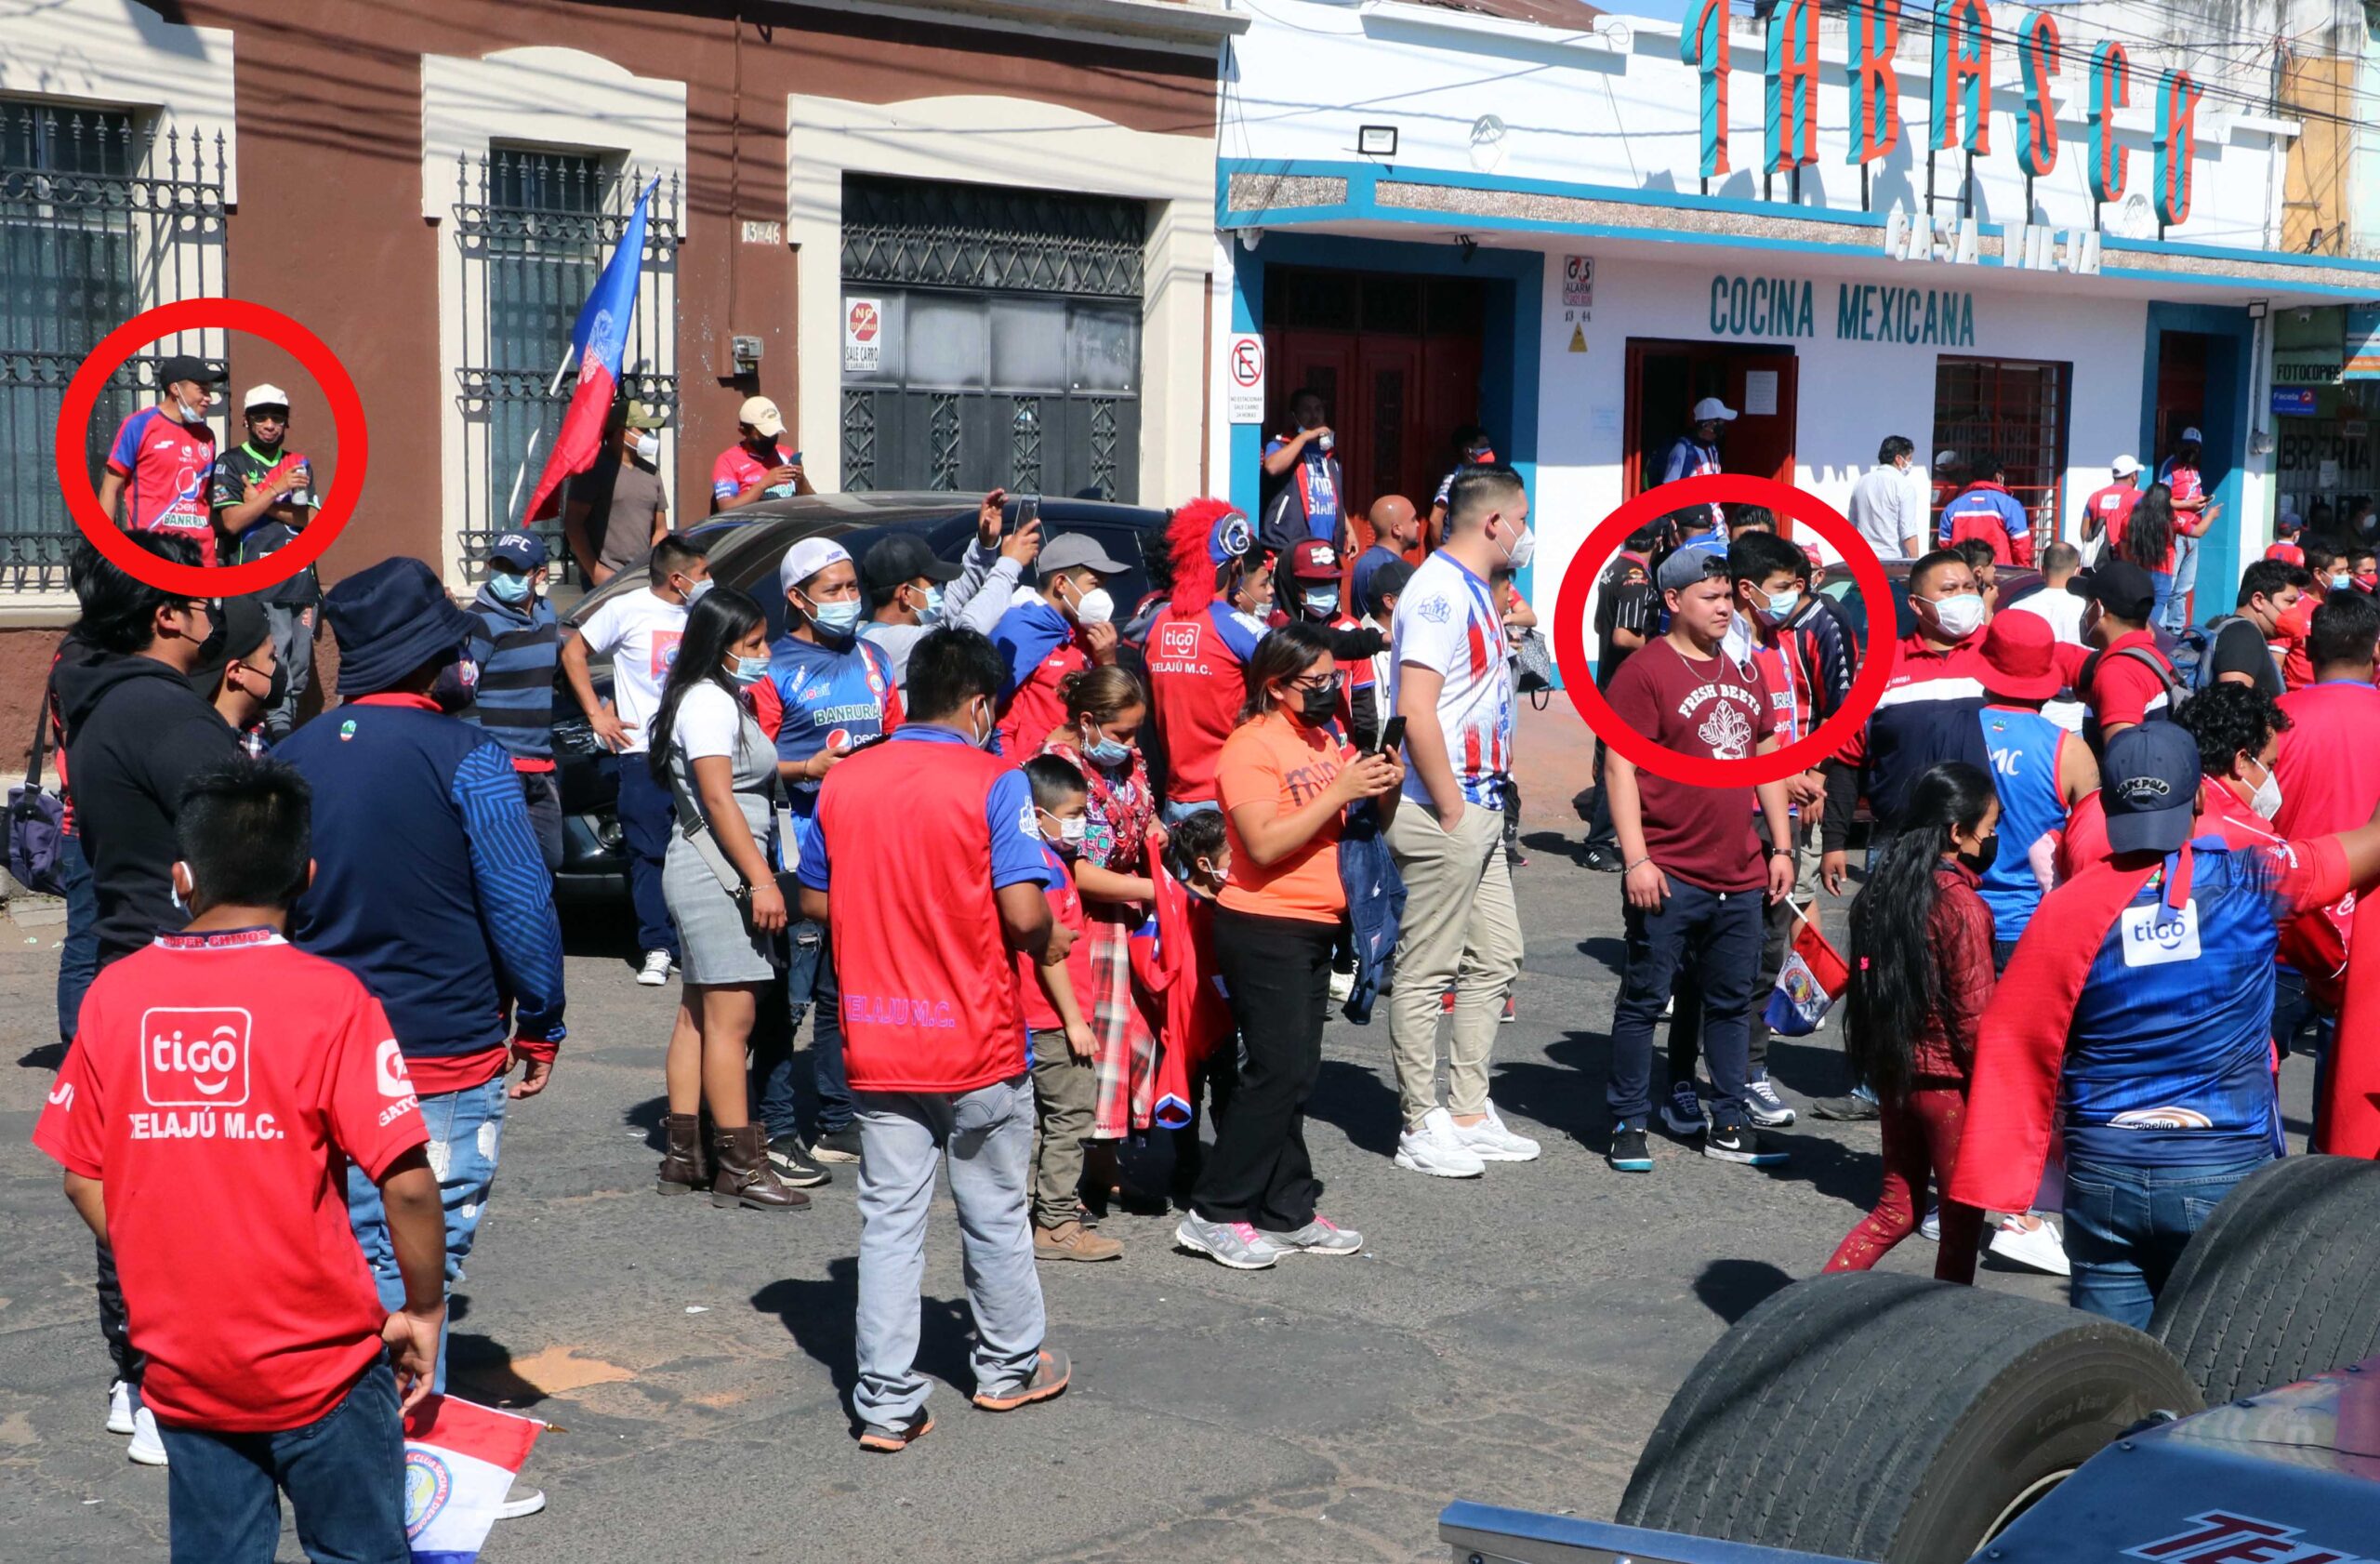 El área de Salud de Quetzaltenango rechazó la solicitud de Xelajú MC que buscaba que sus aficionados pudieran ingresar al estadio; la decisión se basa en evitar contagios de COVID-19. Esta petición de la junta directiva de equipo fue criticada por algunos sectores sociales del departamento.